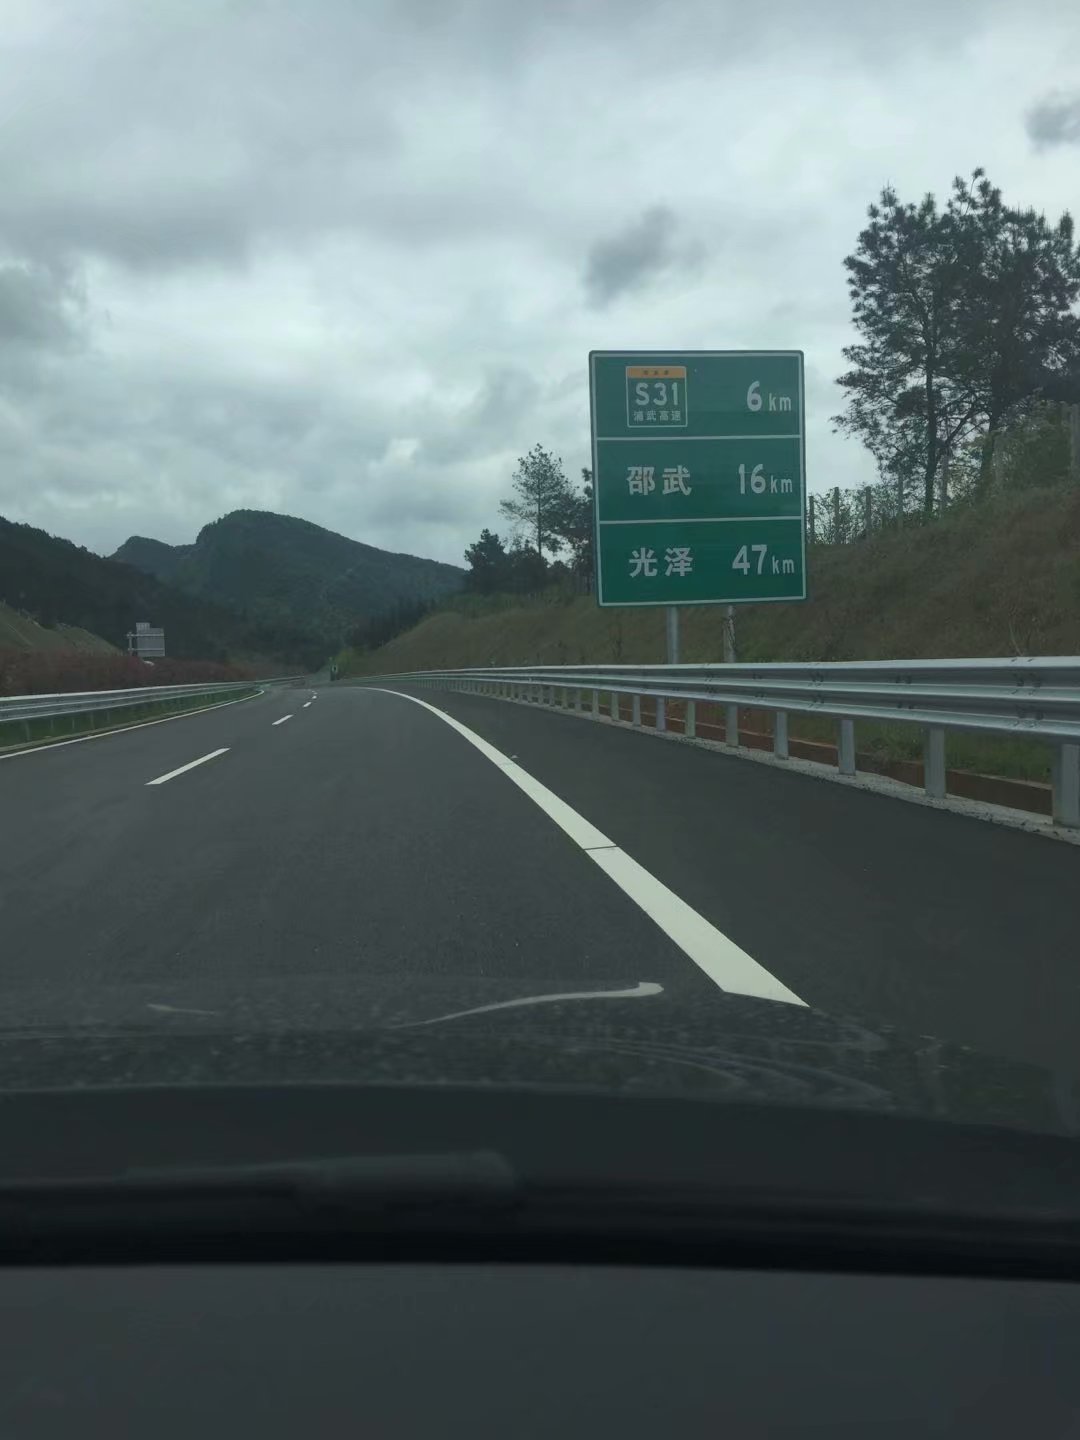 距張家際互通6公里的一塊路牌，其中浦建高速公路被標為浦武高速